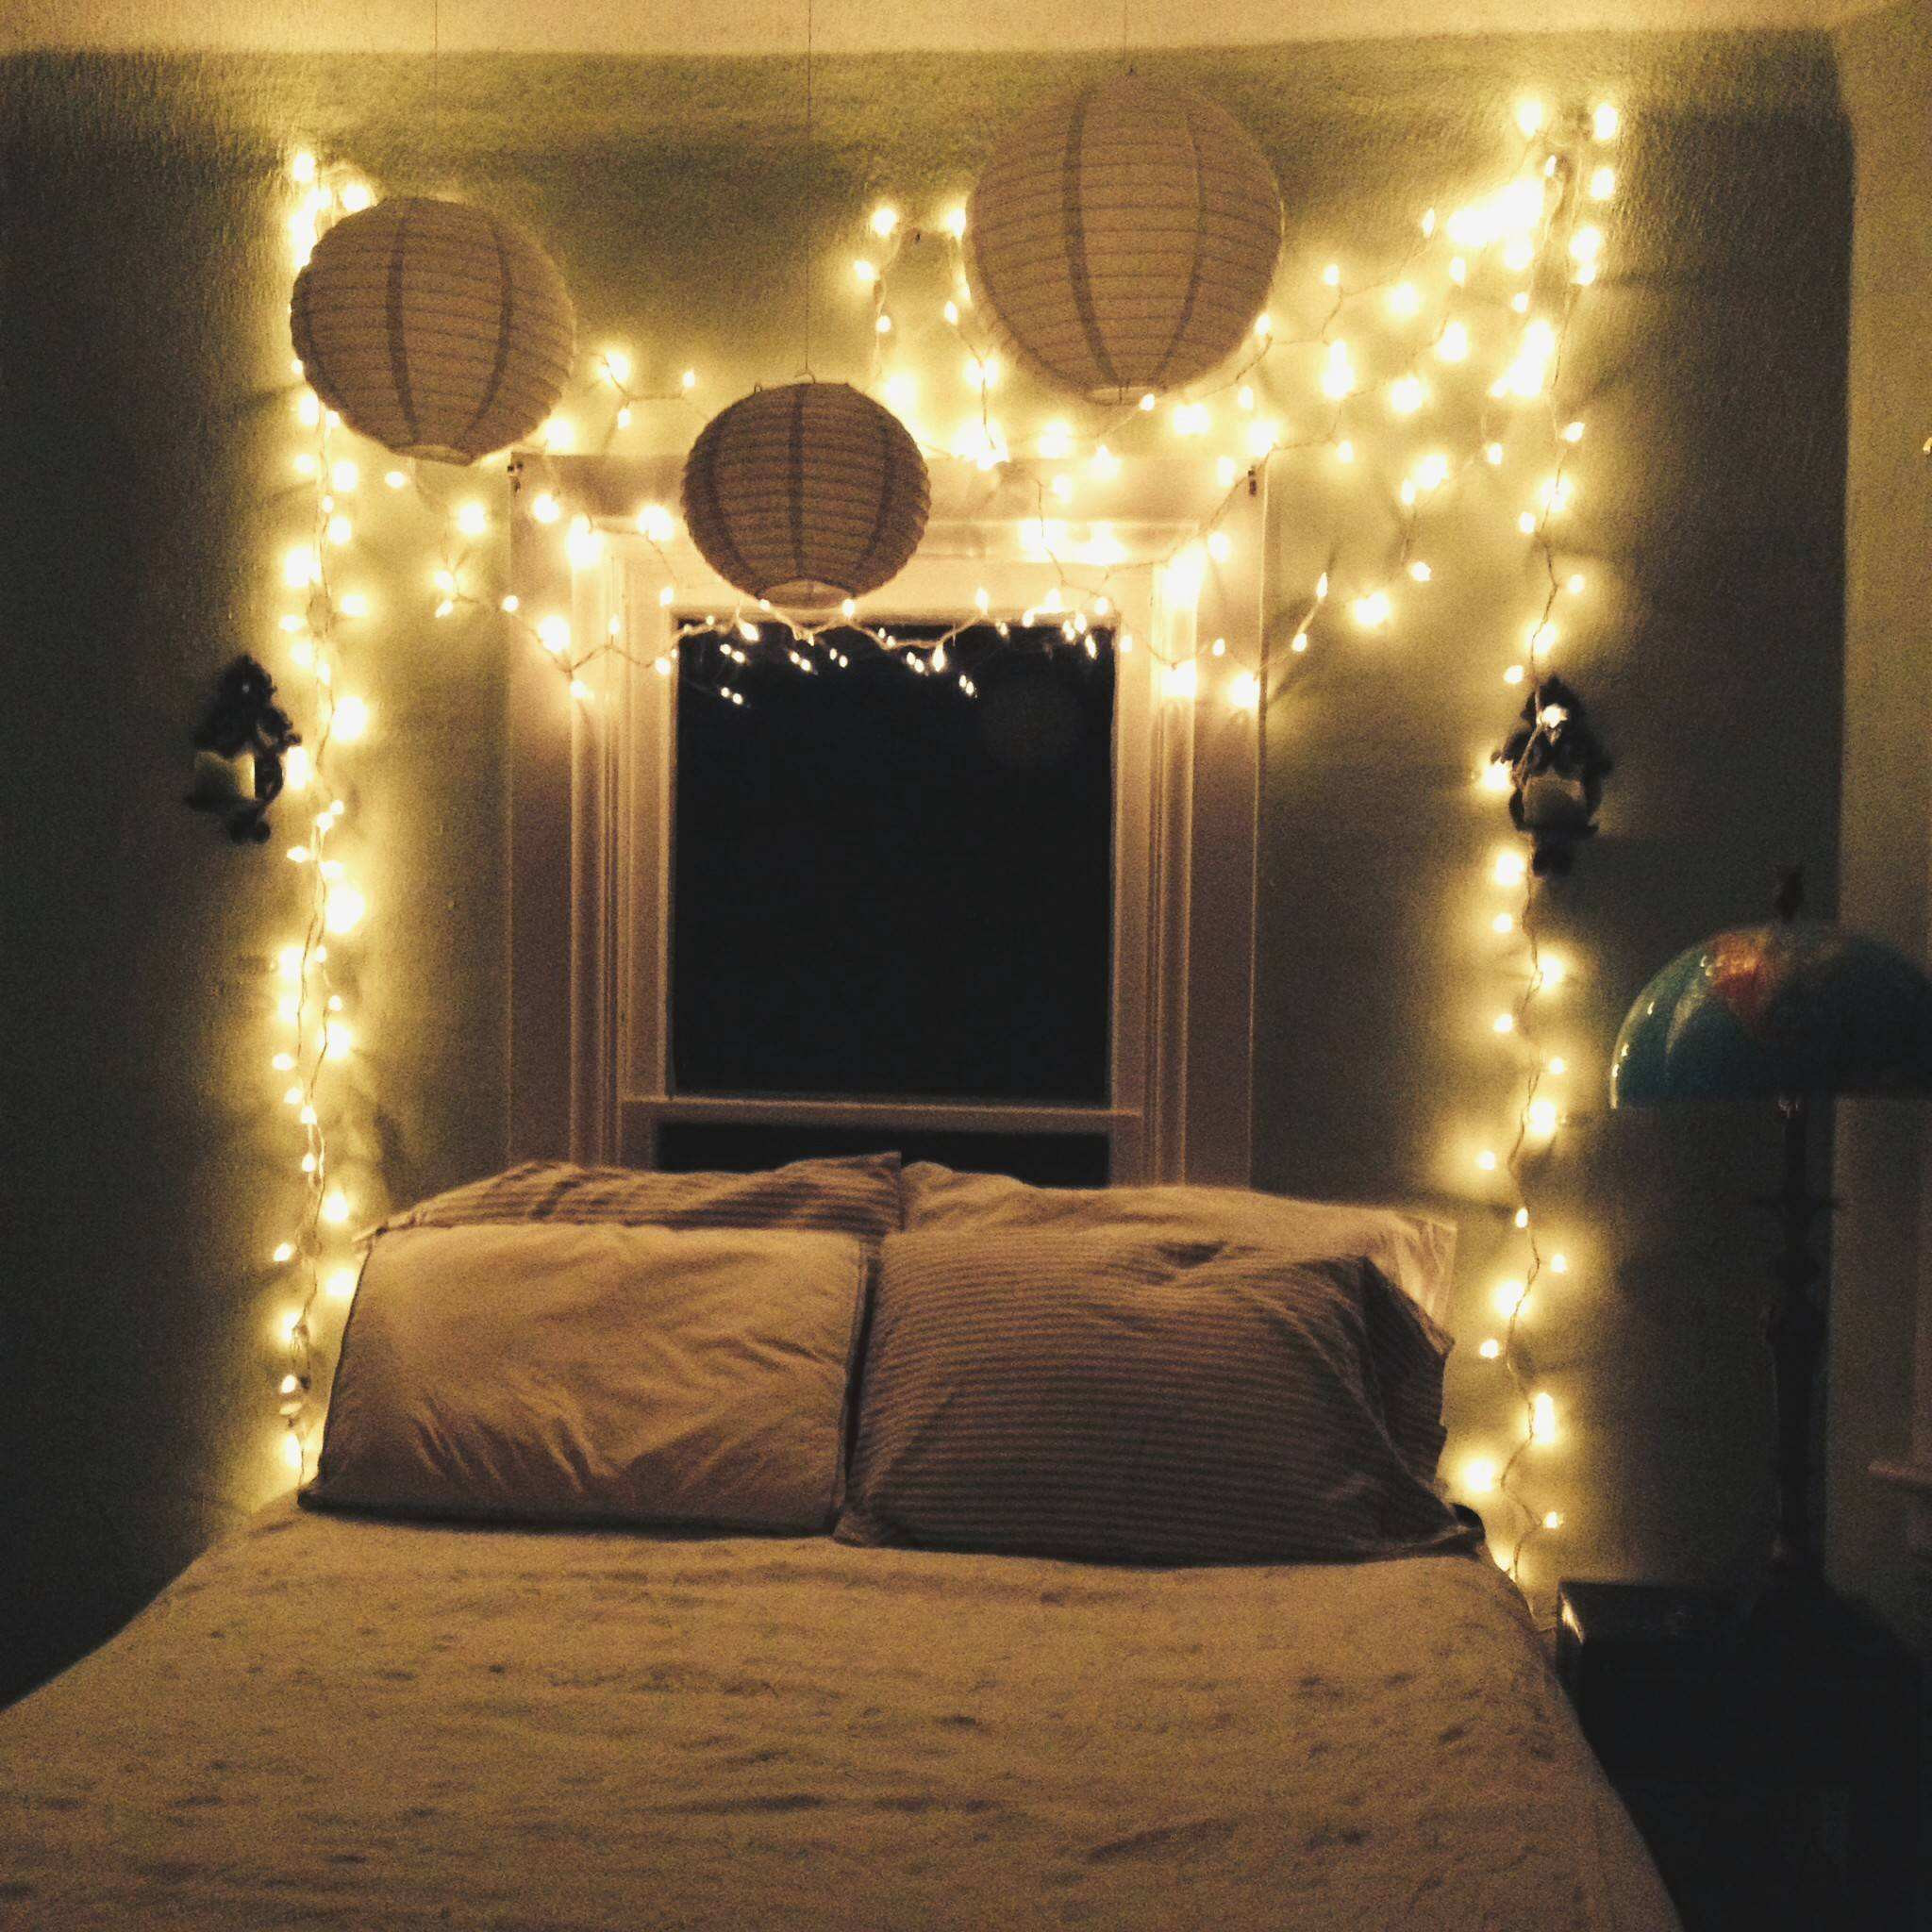 Star String Lights For Bedroom
 Bedroom Lighting Star Fairy Lights For String Tumblr